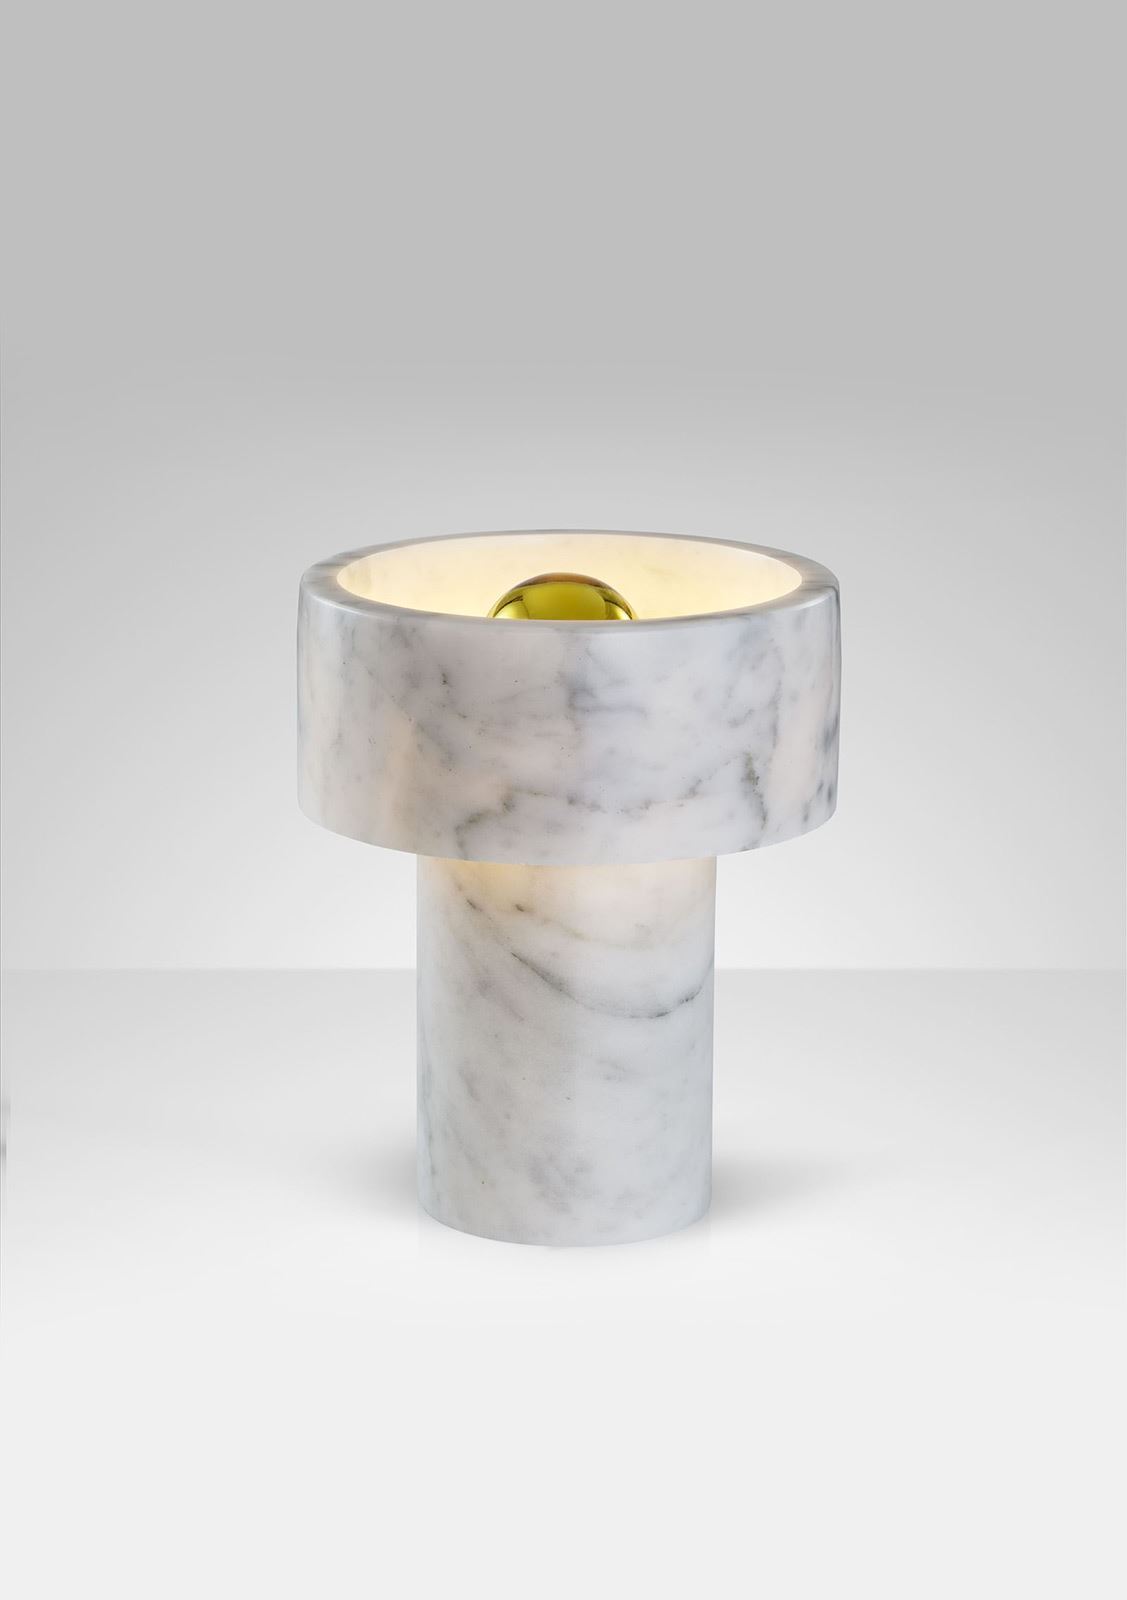 גופי תאורה בקטגוריית: מנורות שולחן  ,שם המוצר: בורסלינו